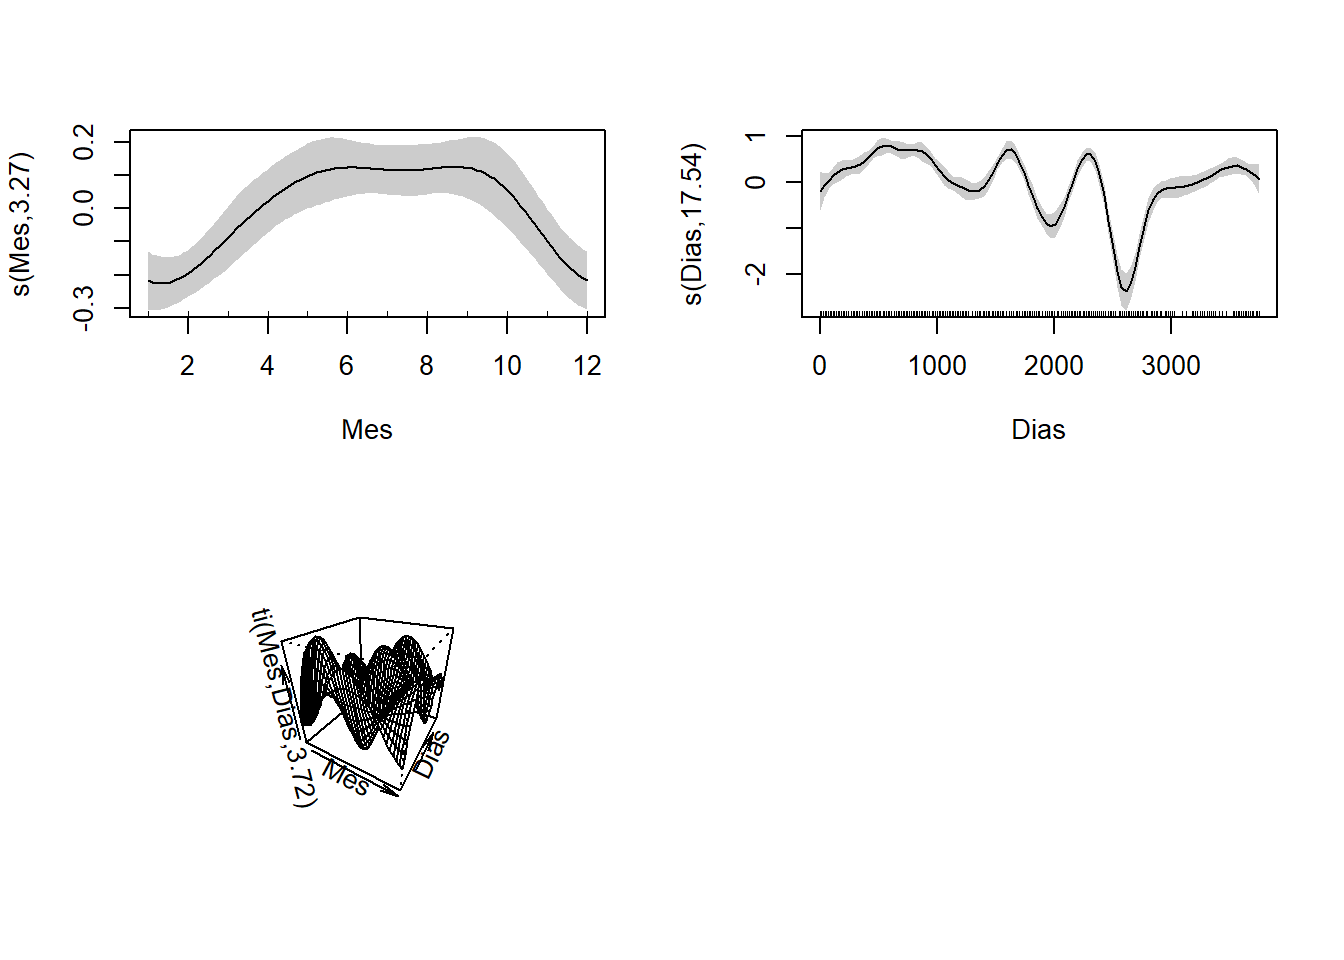 Efectos parciales del modelo 2. Las curvas suaves se centraron en cero, se indican los intervalos de confianza de 95% en gris. Las líneas internas en los ejes x (Mes y Dias) representan los datos.